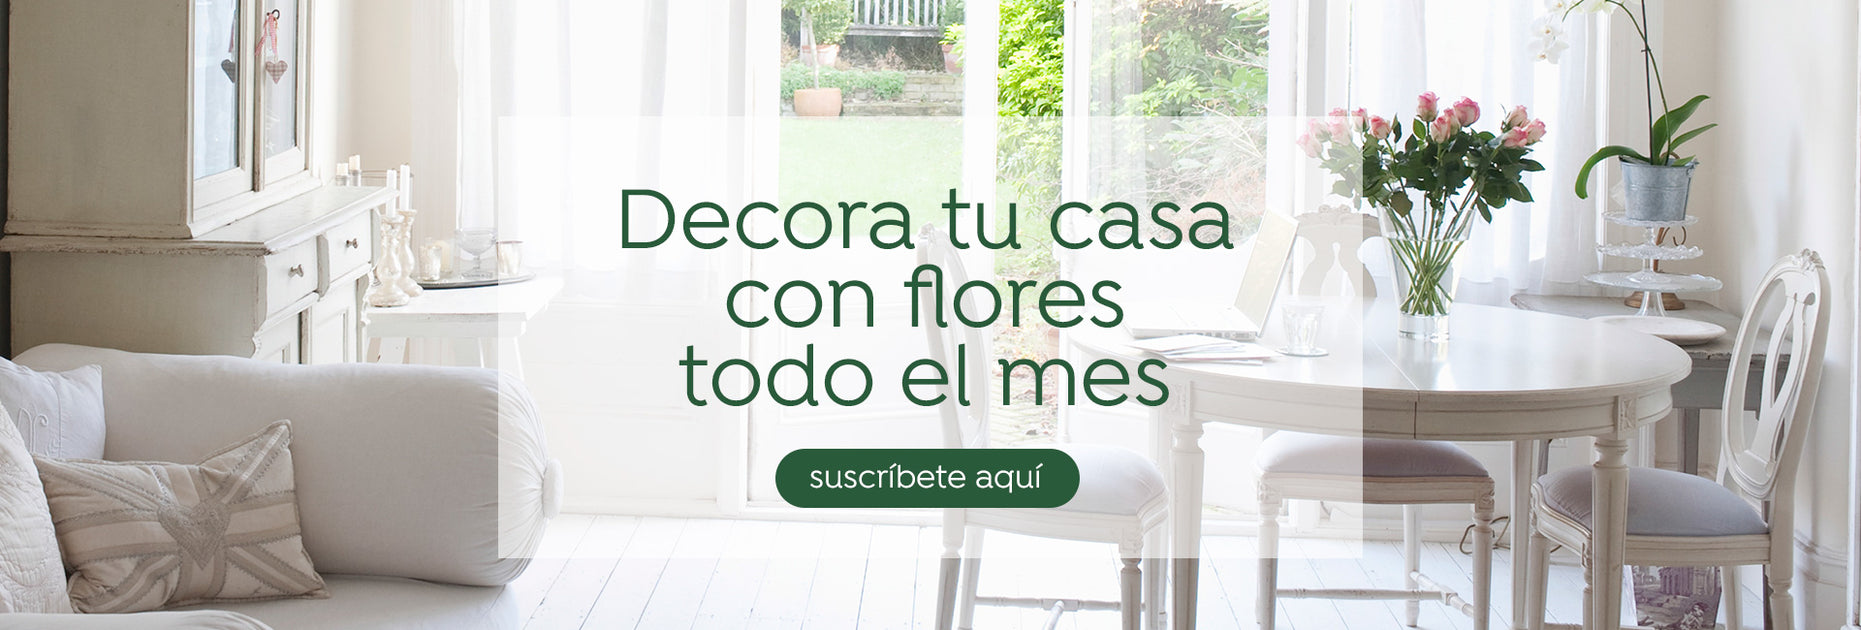 (c) Floresparatucasa.com